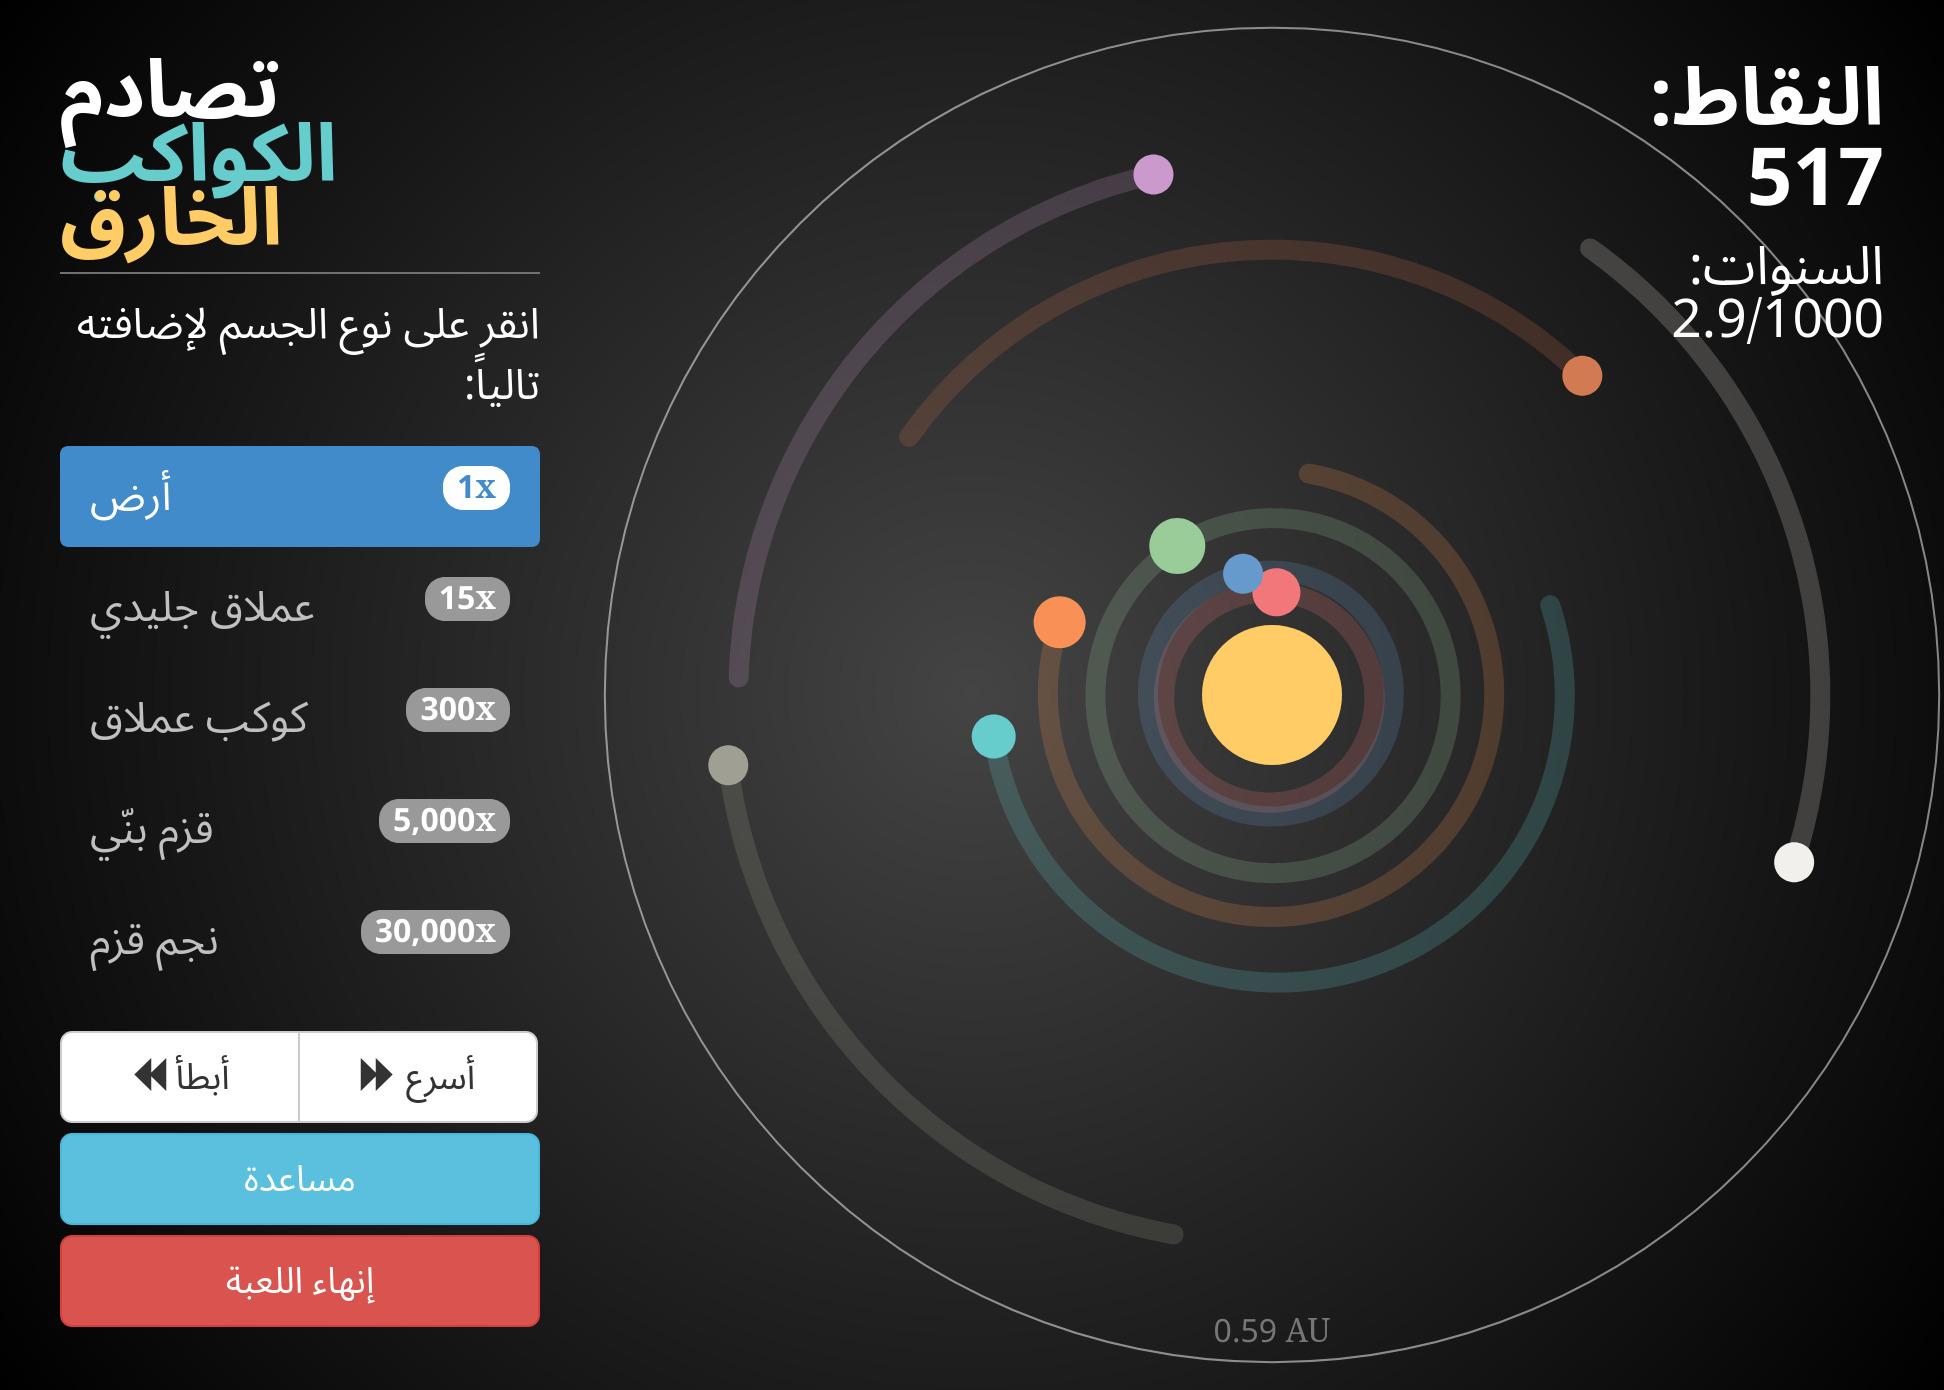 لقطة شاشة من اللعبة تظهر عدد من الكواكب التي تدور حول النجم المركزي بالإضافة إلى عناصر تحكّم